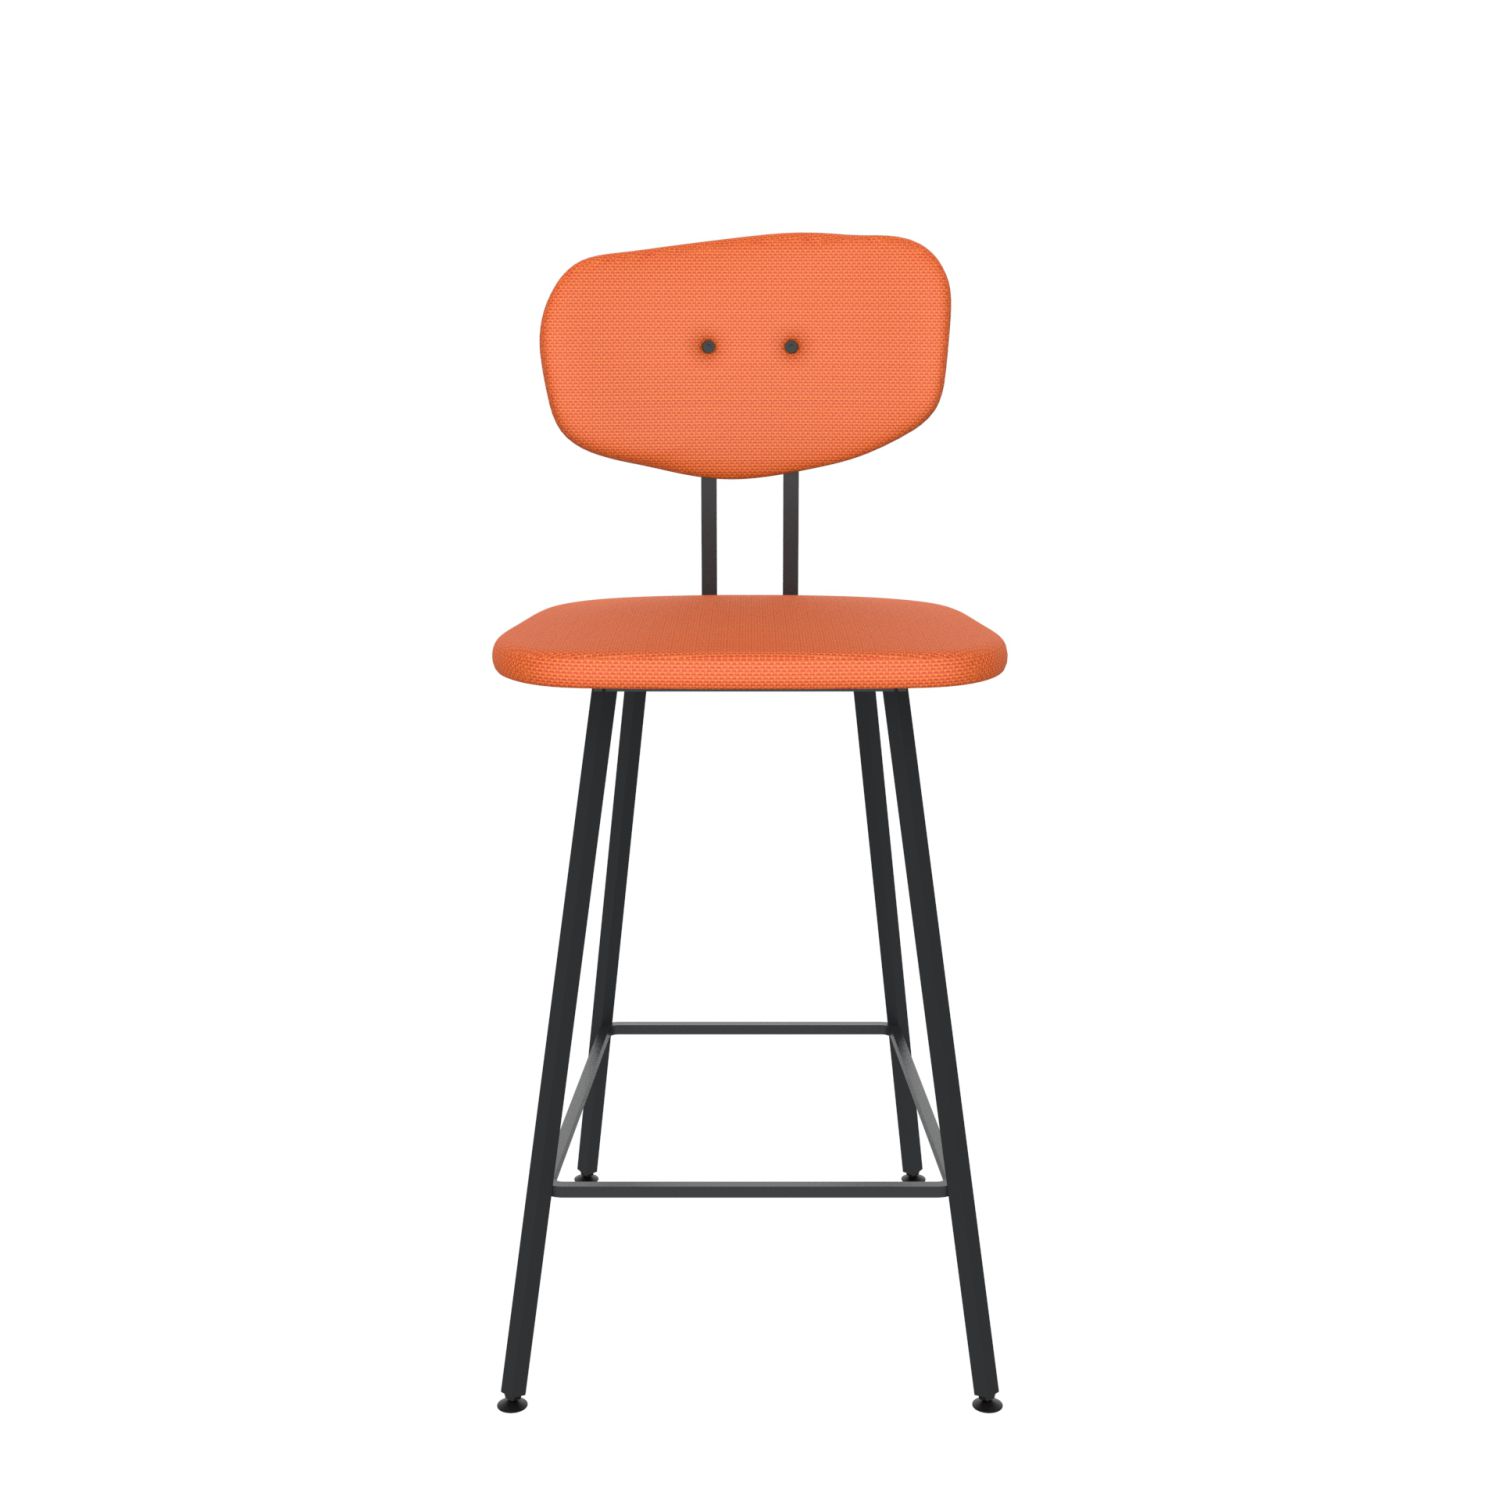 maarten baas barstool 65 cm without armrests backrest c burn orange 102 frame black